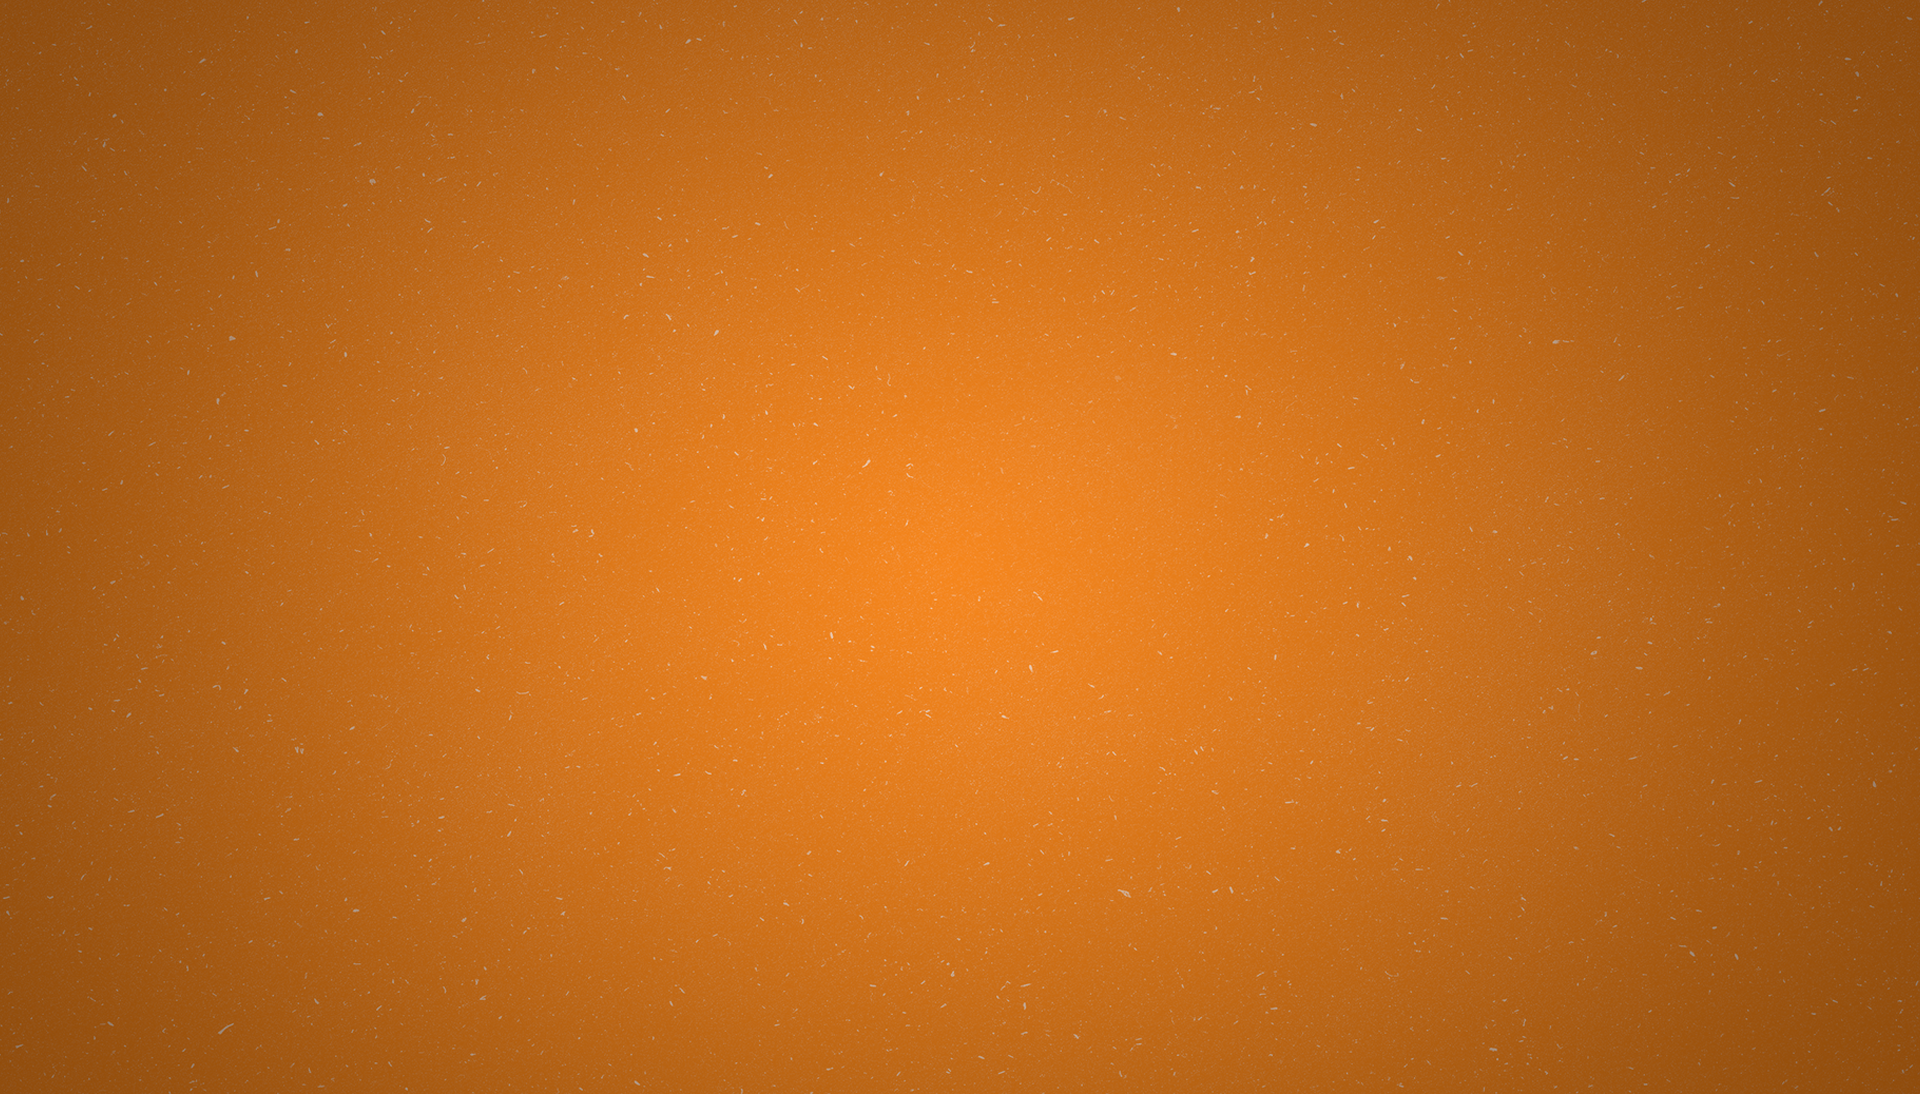 Orange textured background